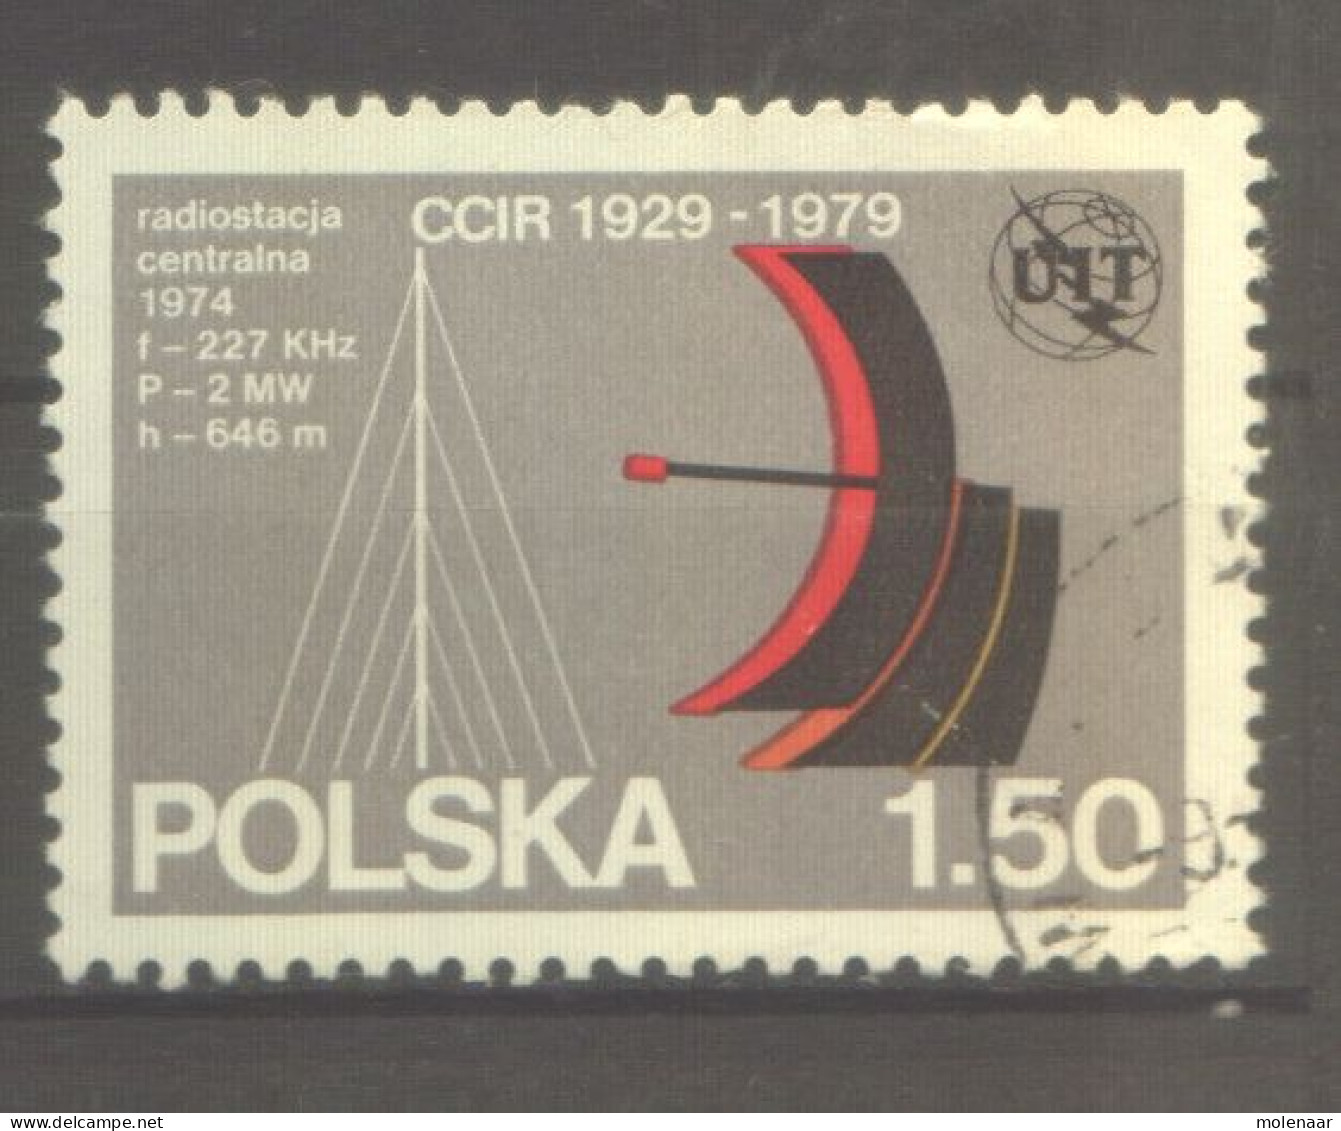 Postzegels > Europa > Polen > 1944-.... Republiek > 1971-80 > Gebruikt  2642 (12173) - Gebraucht